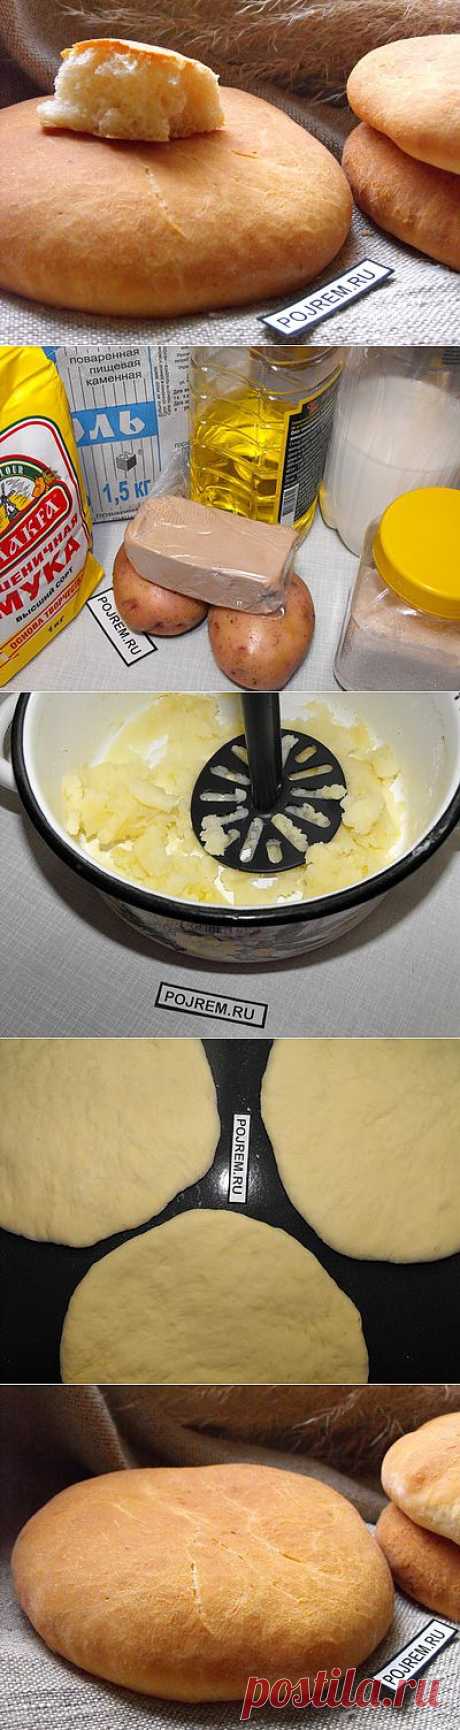 Картофельные лепешки - рецепт с фото